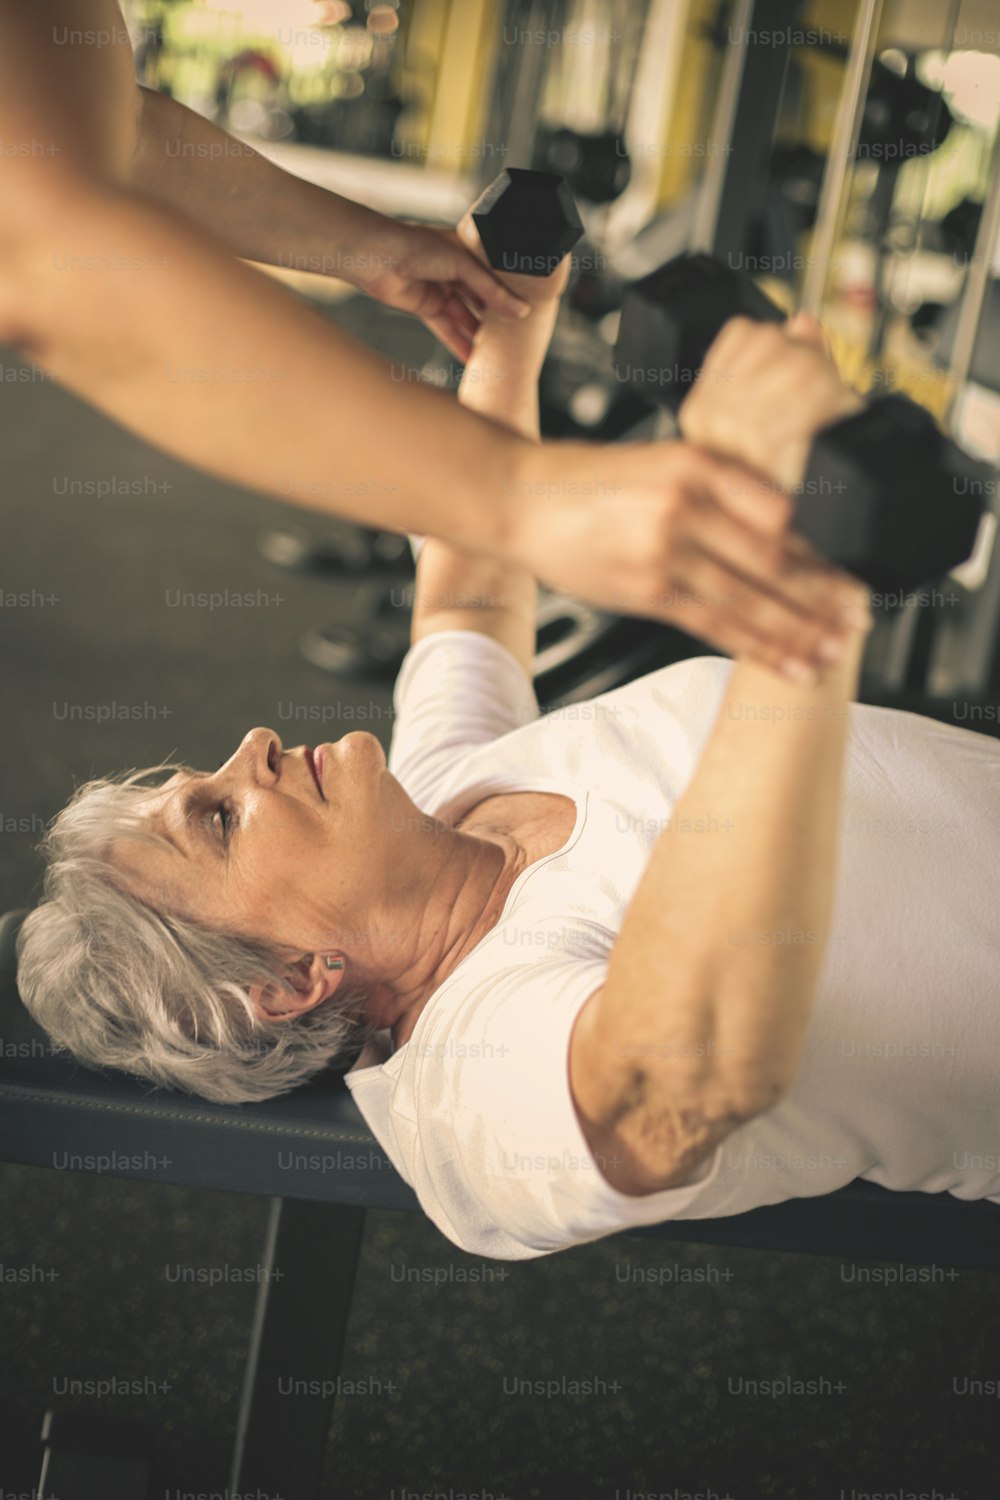 Exercice de travail d’entraîneur personnel avec une femme âgée dans le gymnase. Femme soulevant du poids. Entraînement en salle de sport.